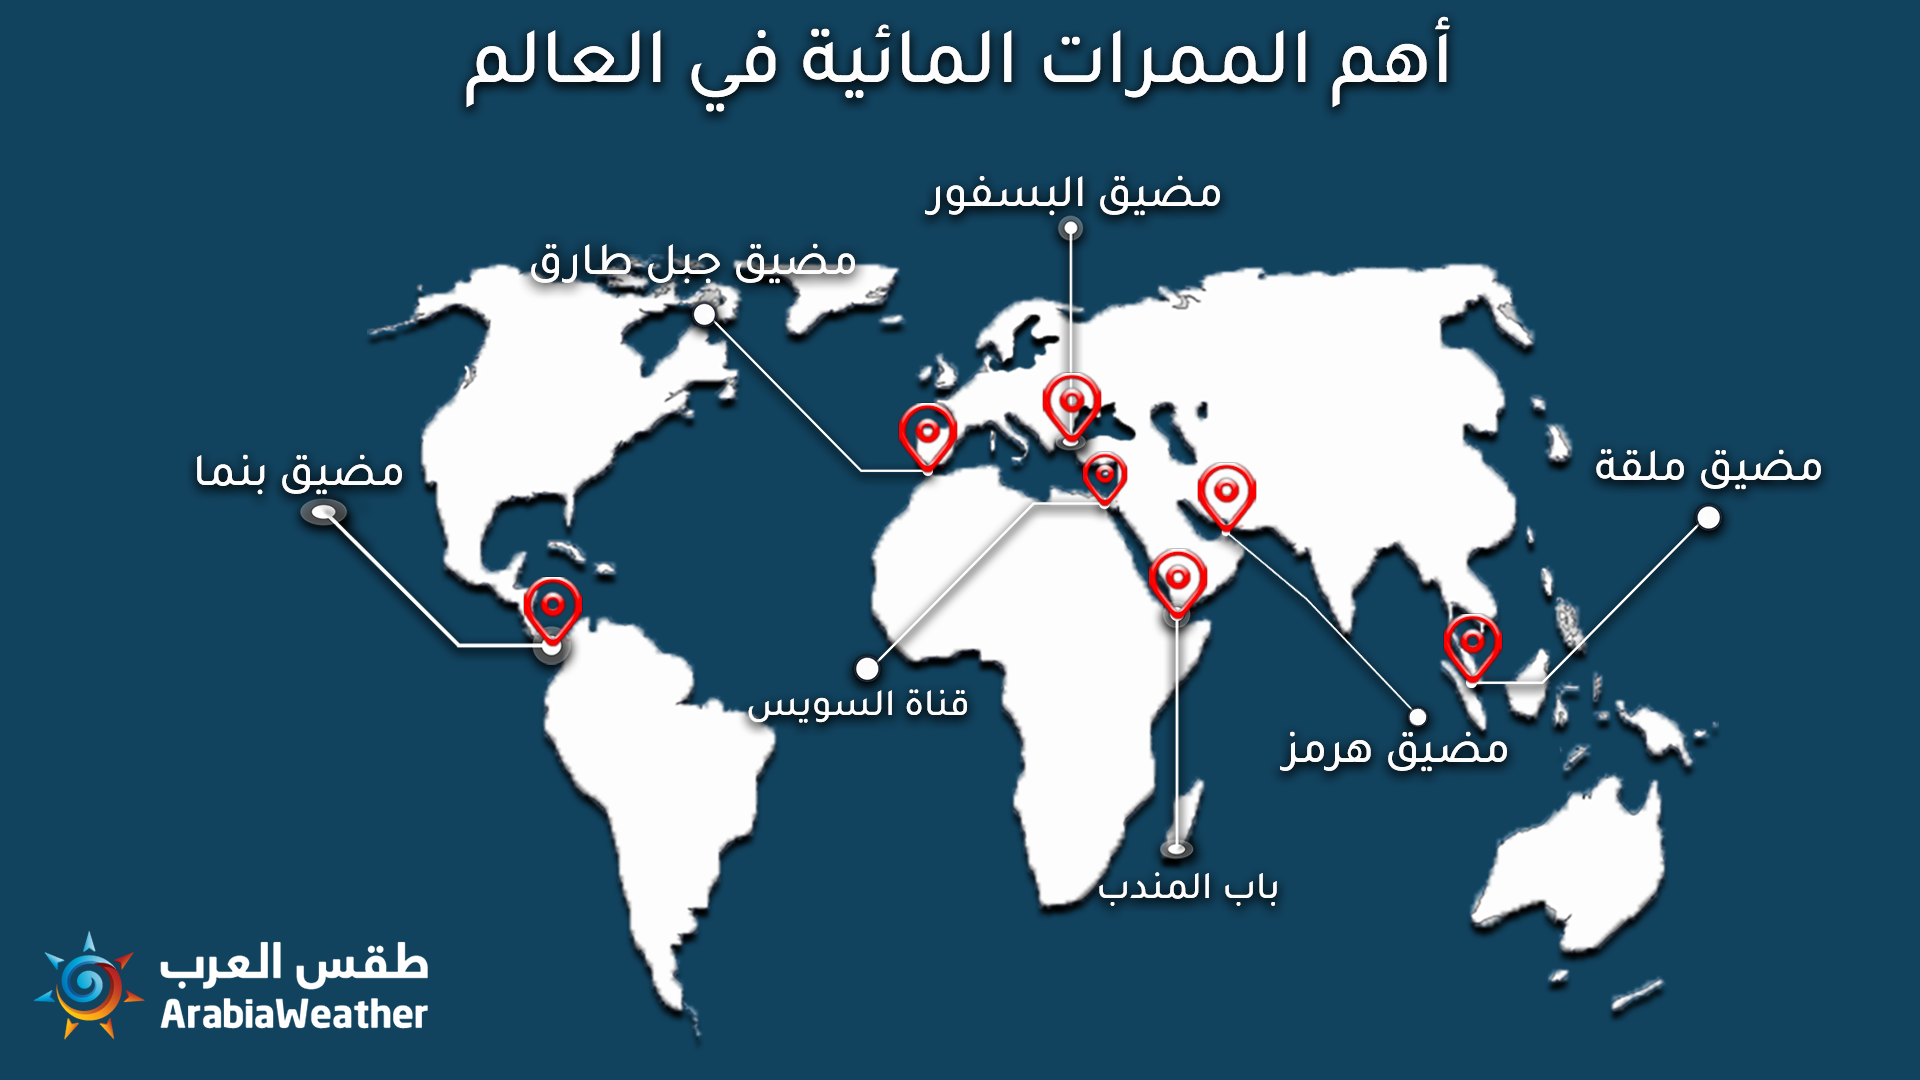 المضيق الذي يصل الخليج العربي بخليج عمان هو مضيق